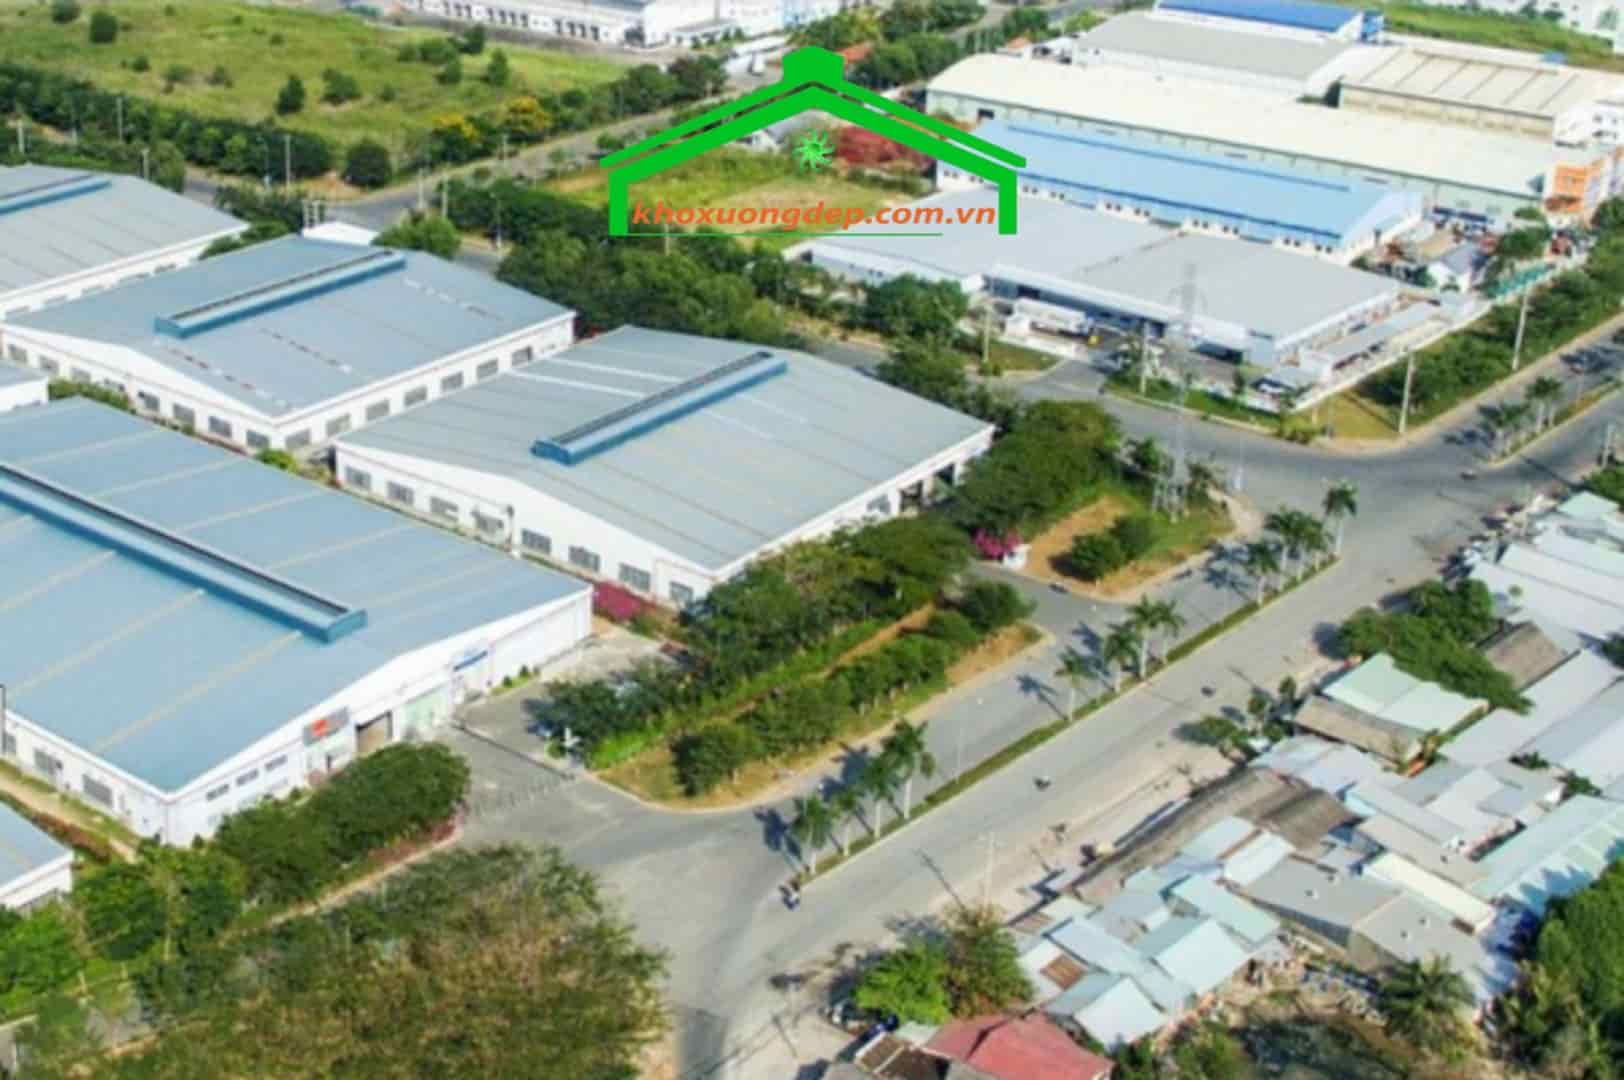 Các ngành nghề được cấp phép đầu tư khu công nghiệp Tân Bình